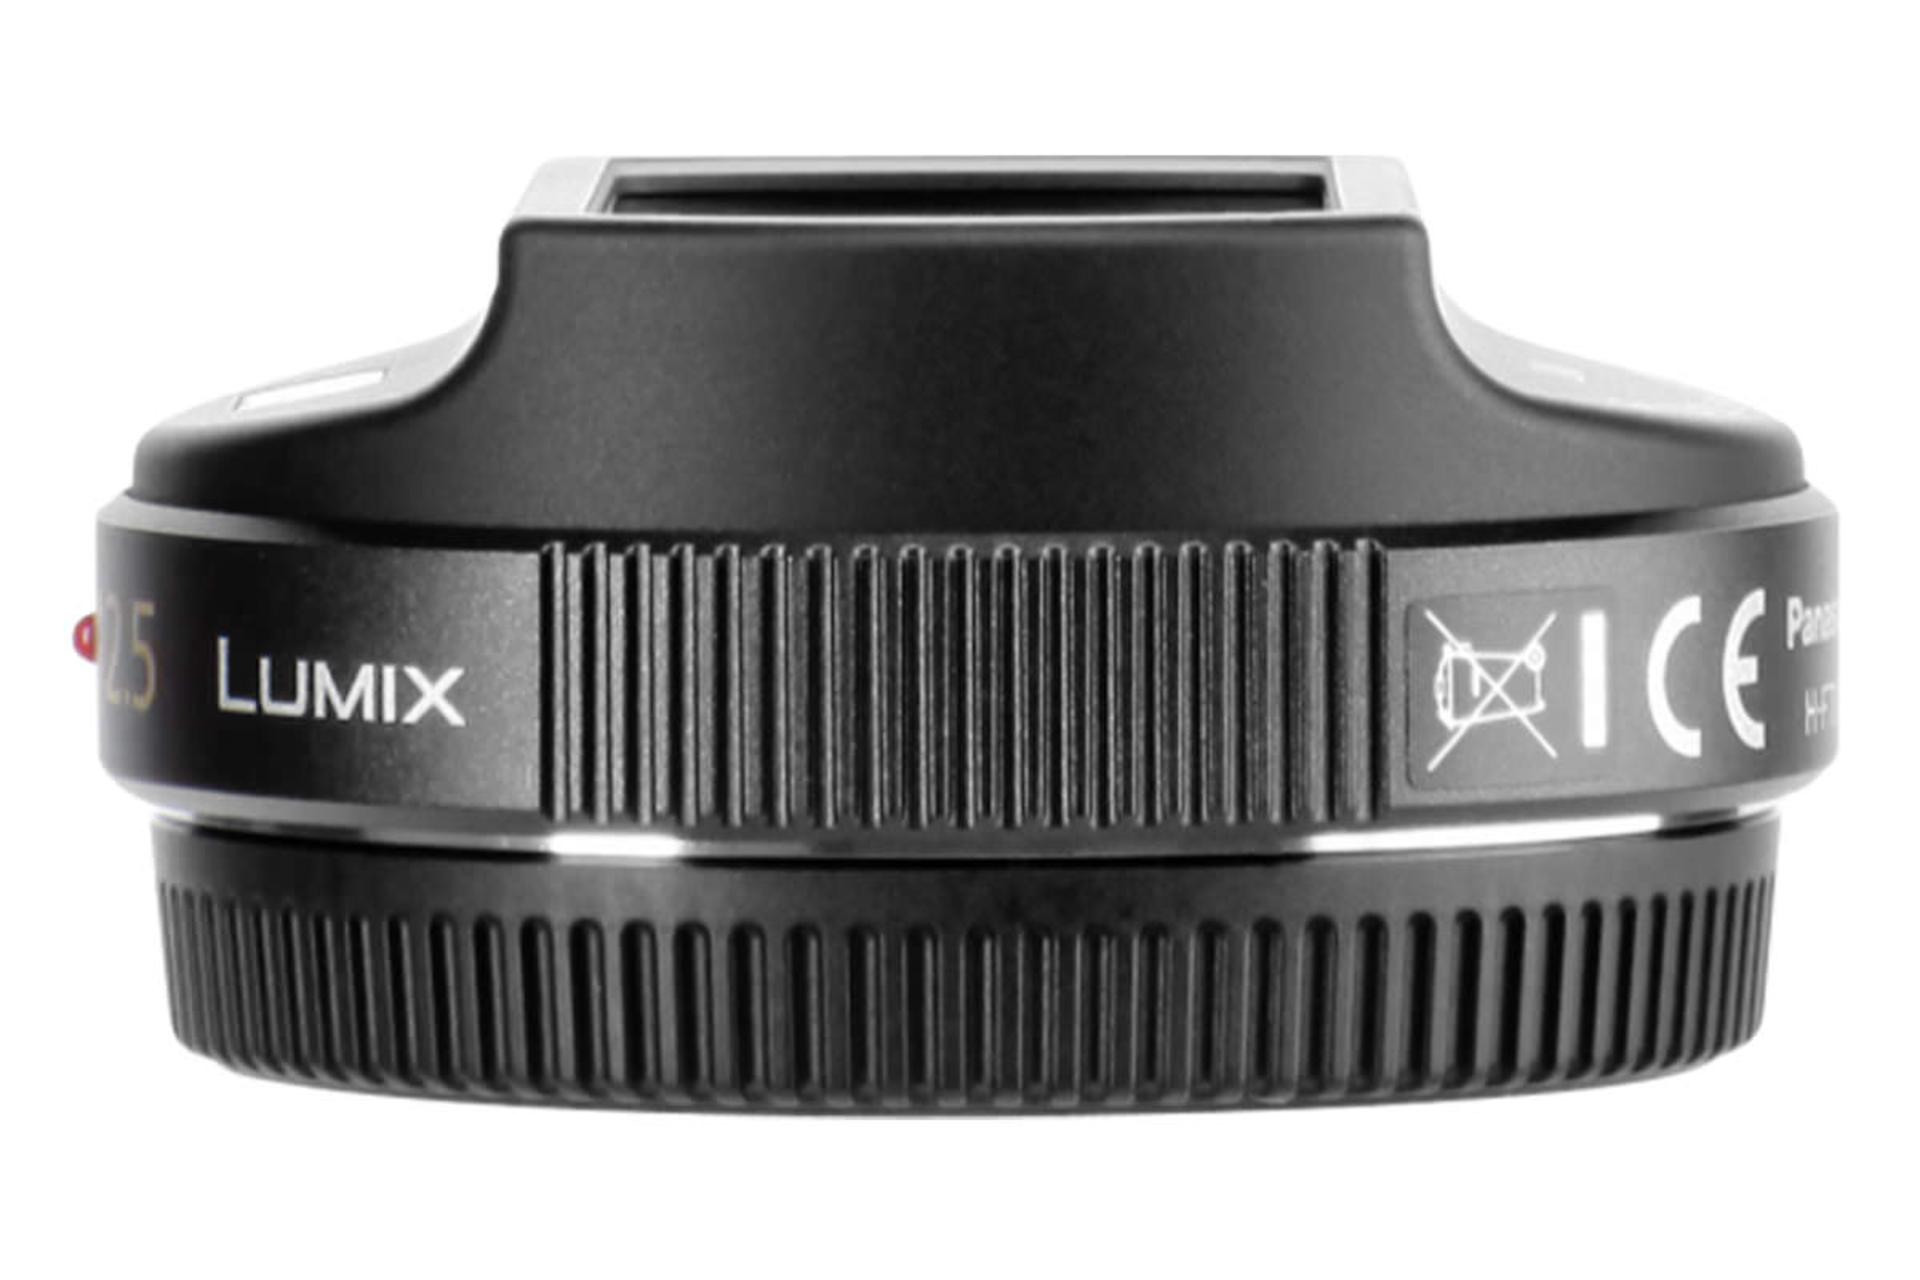  لنز پاناسونیک Lumix G 12.5mm / F12 نمای پهلو